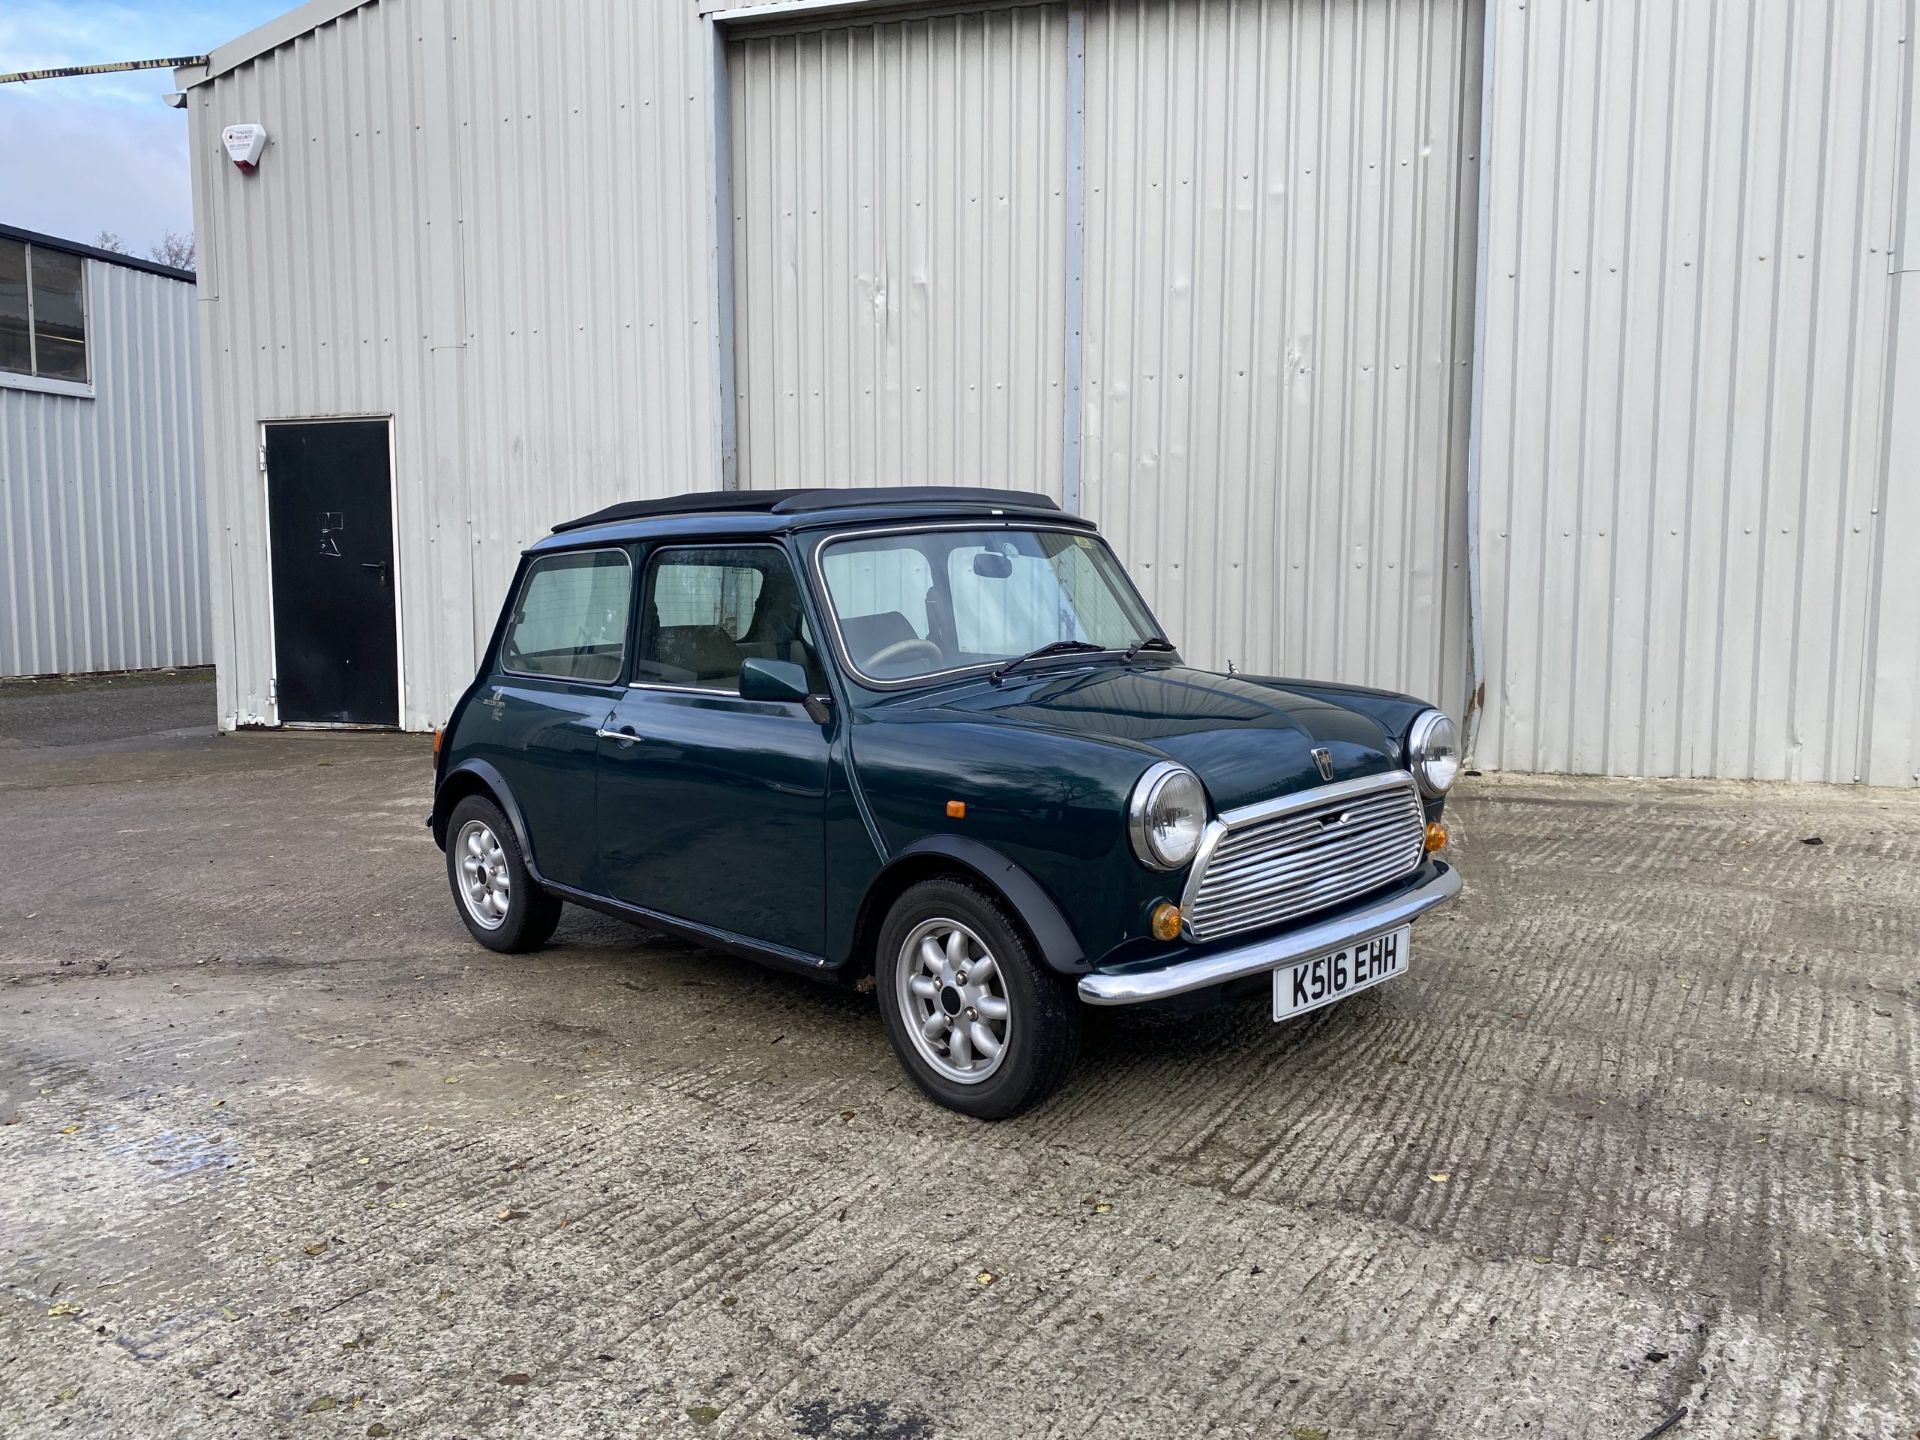 Rover Mini British Open Edition